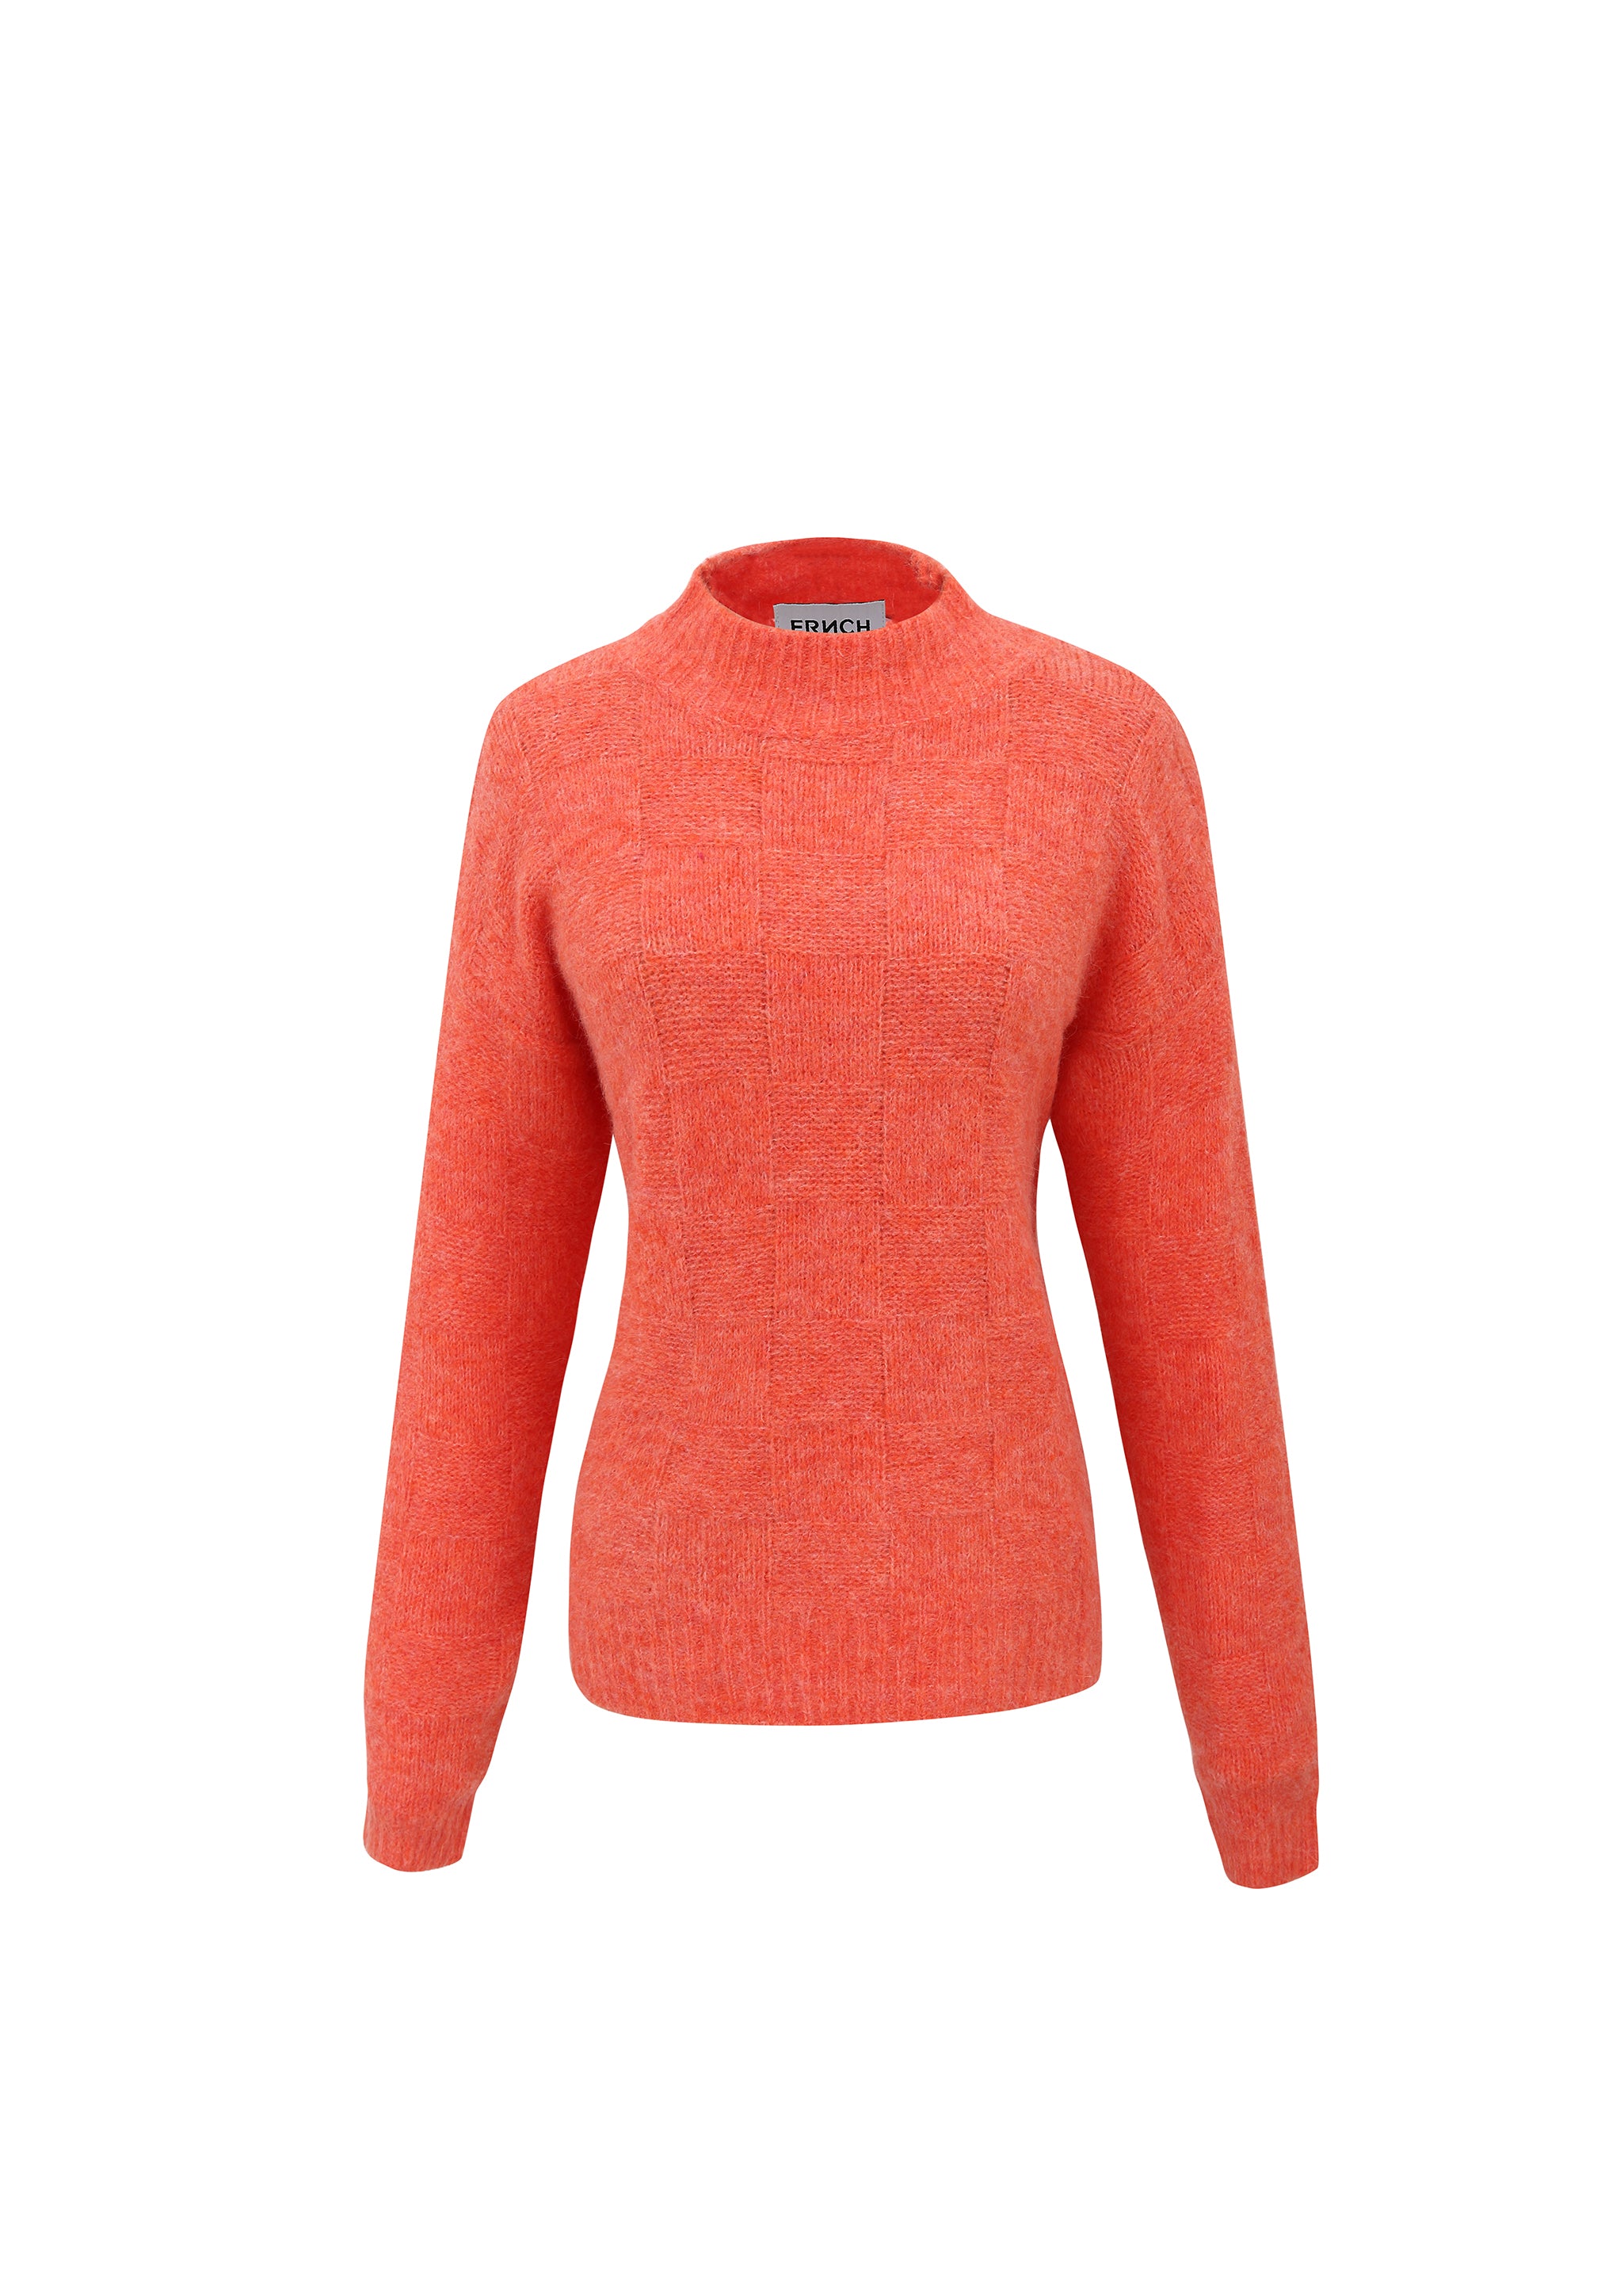 DESTINY Sweater Orange